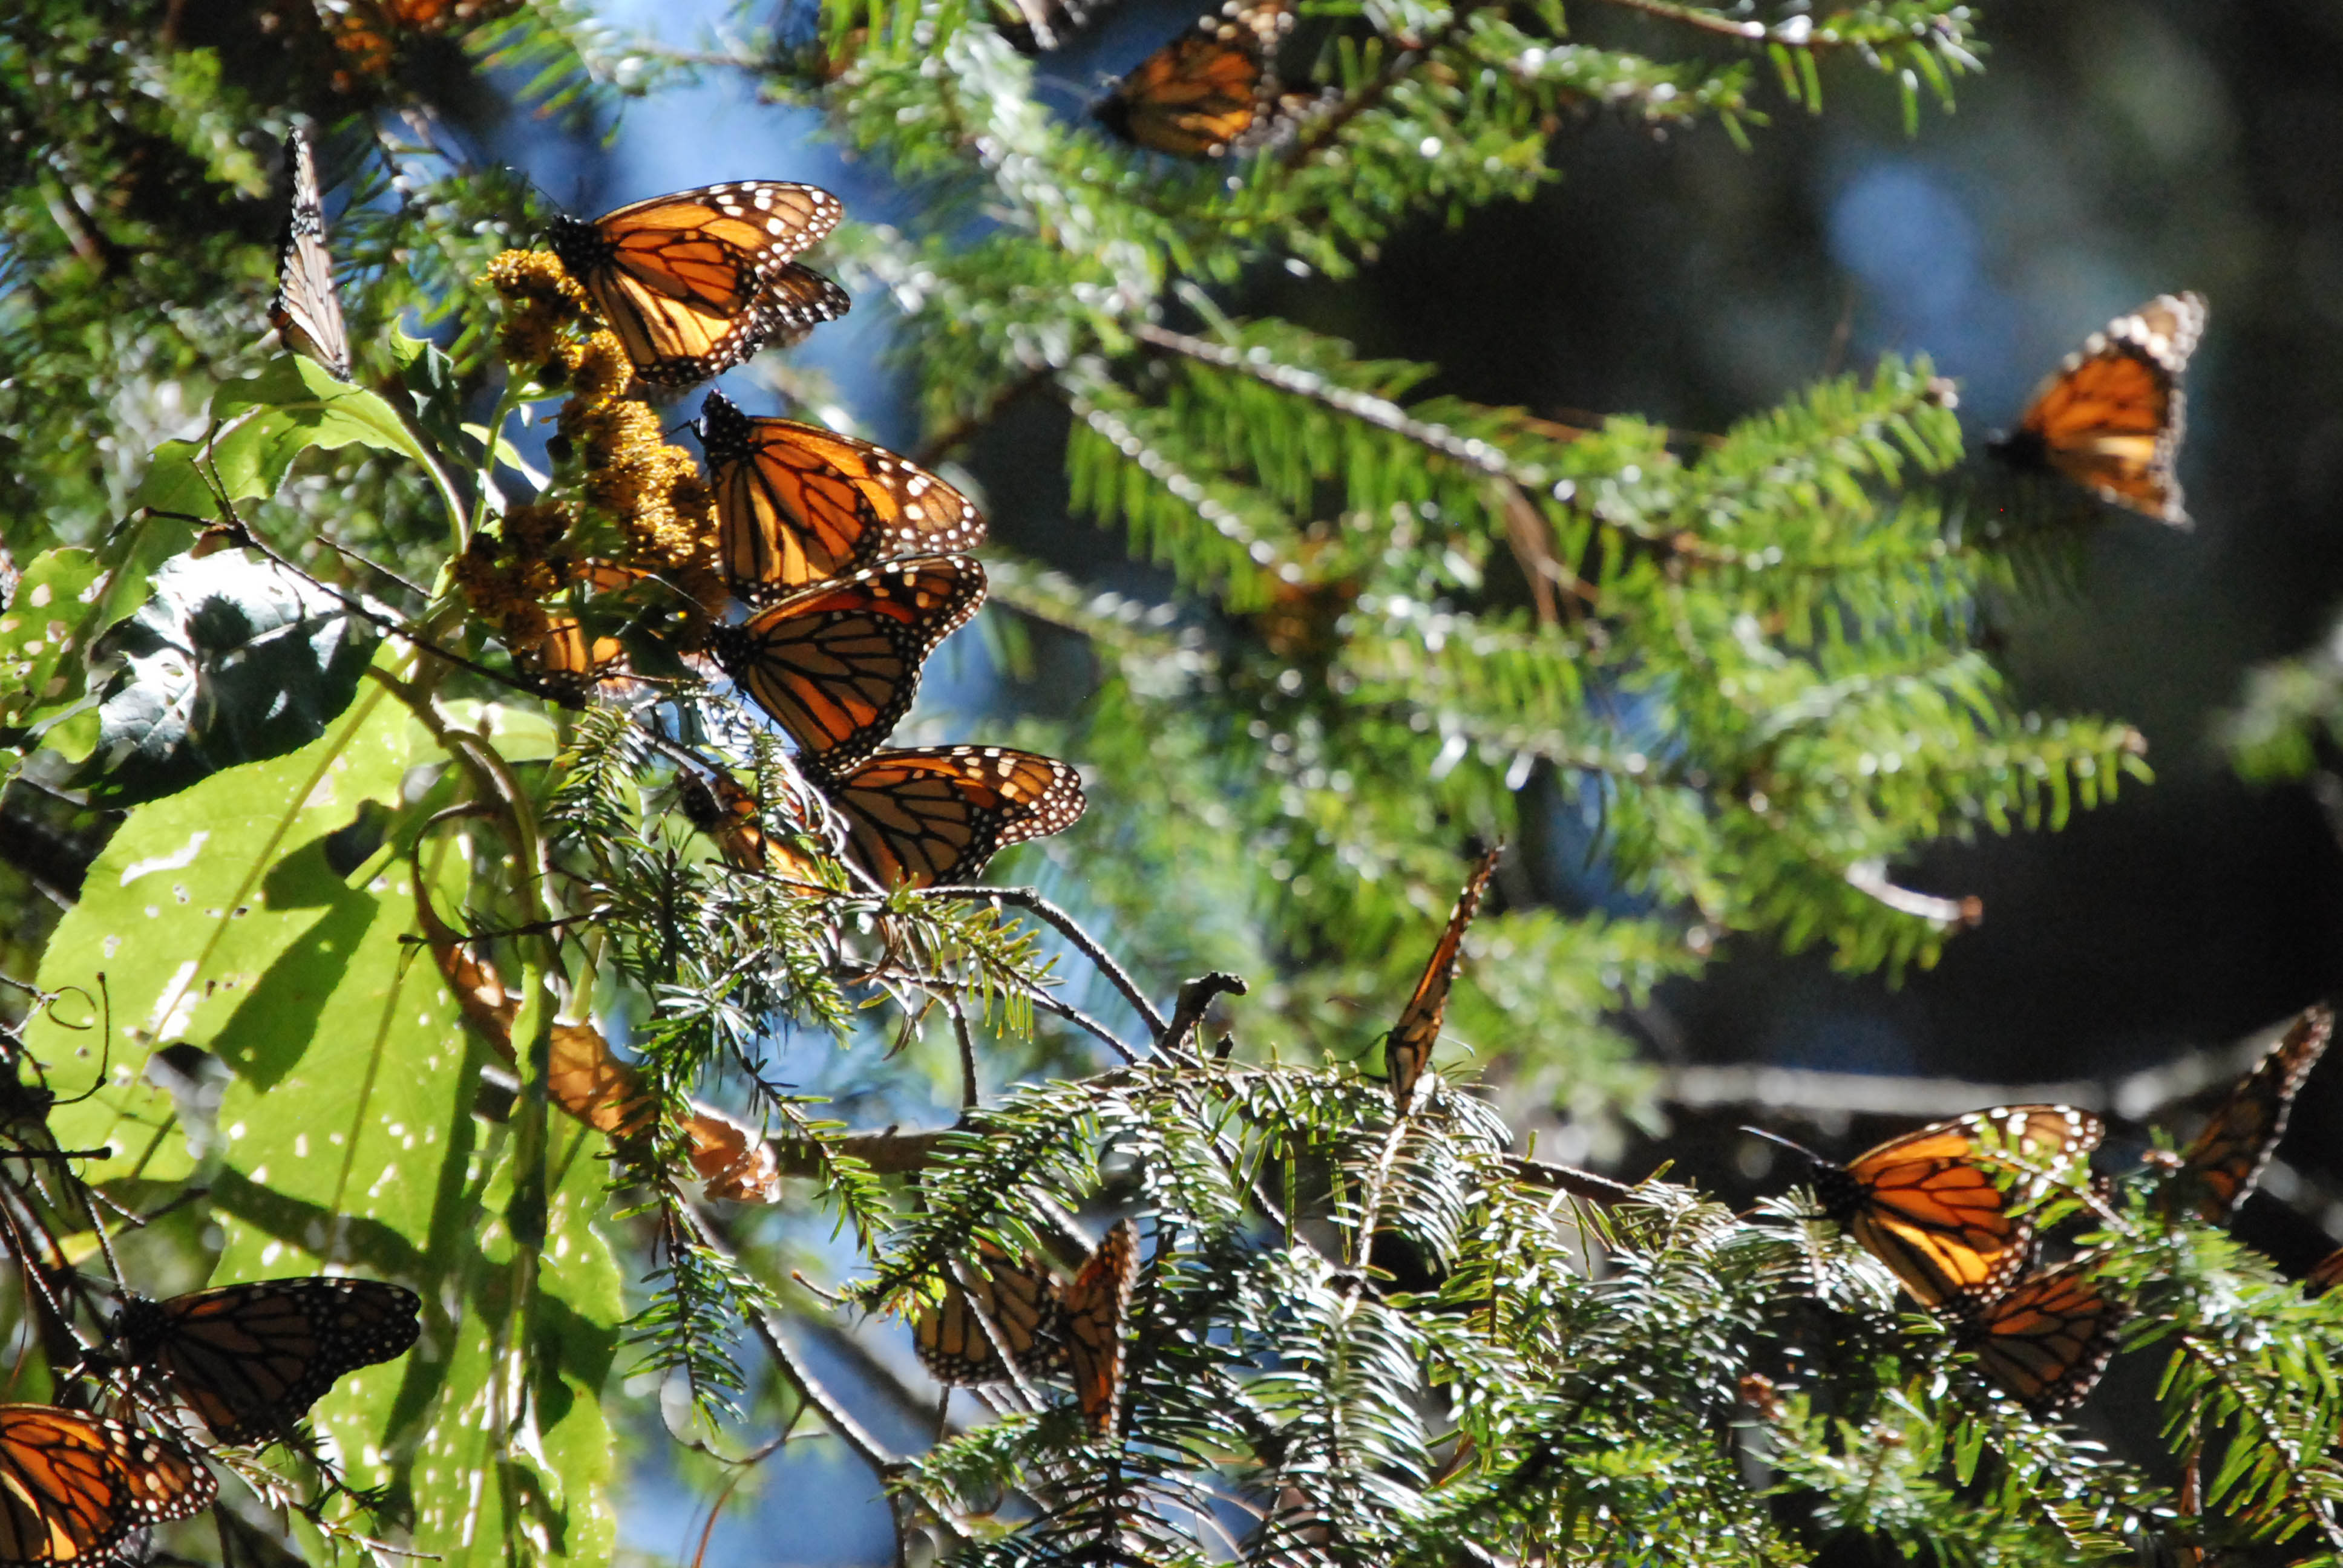 La tala clandestina en la Reserva de la Biosfera Mariposa Monarca pasó de 11.92 hectáreas a 0.65,  lo que representa una disminución del 94%. 

